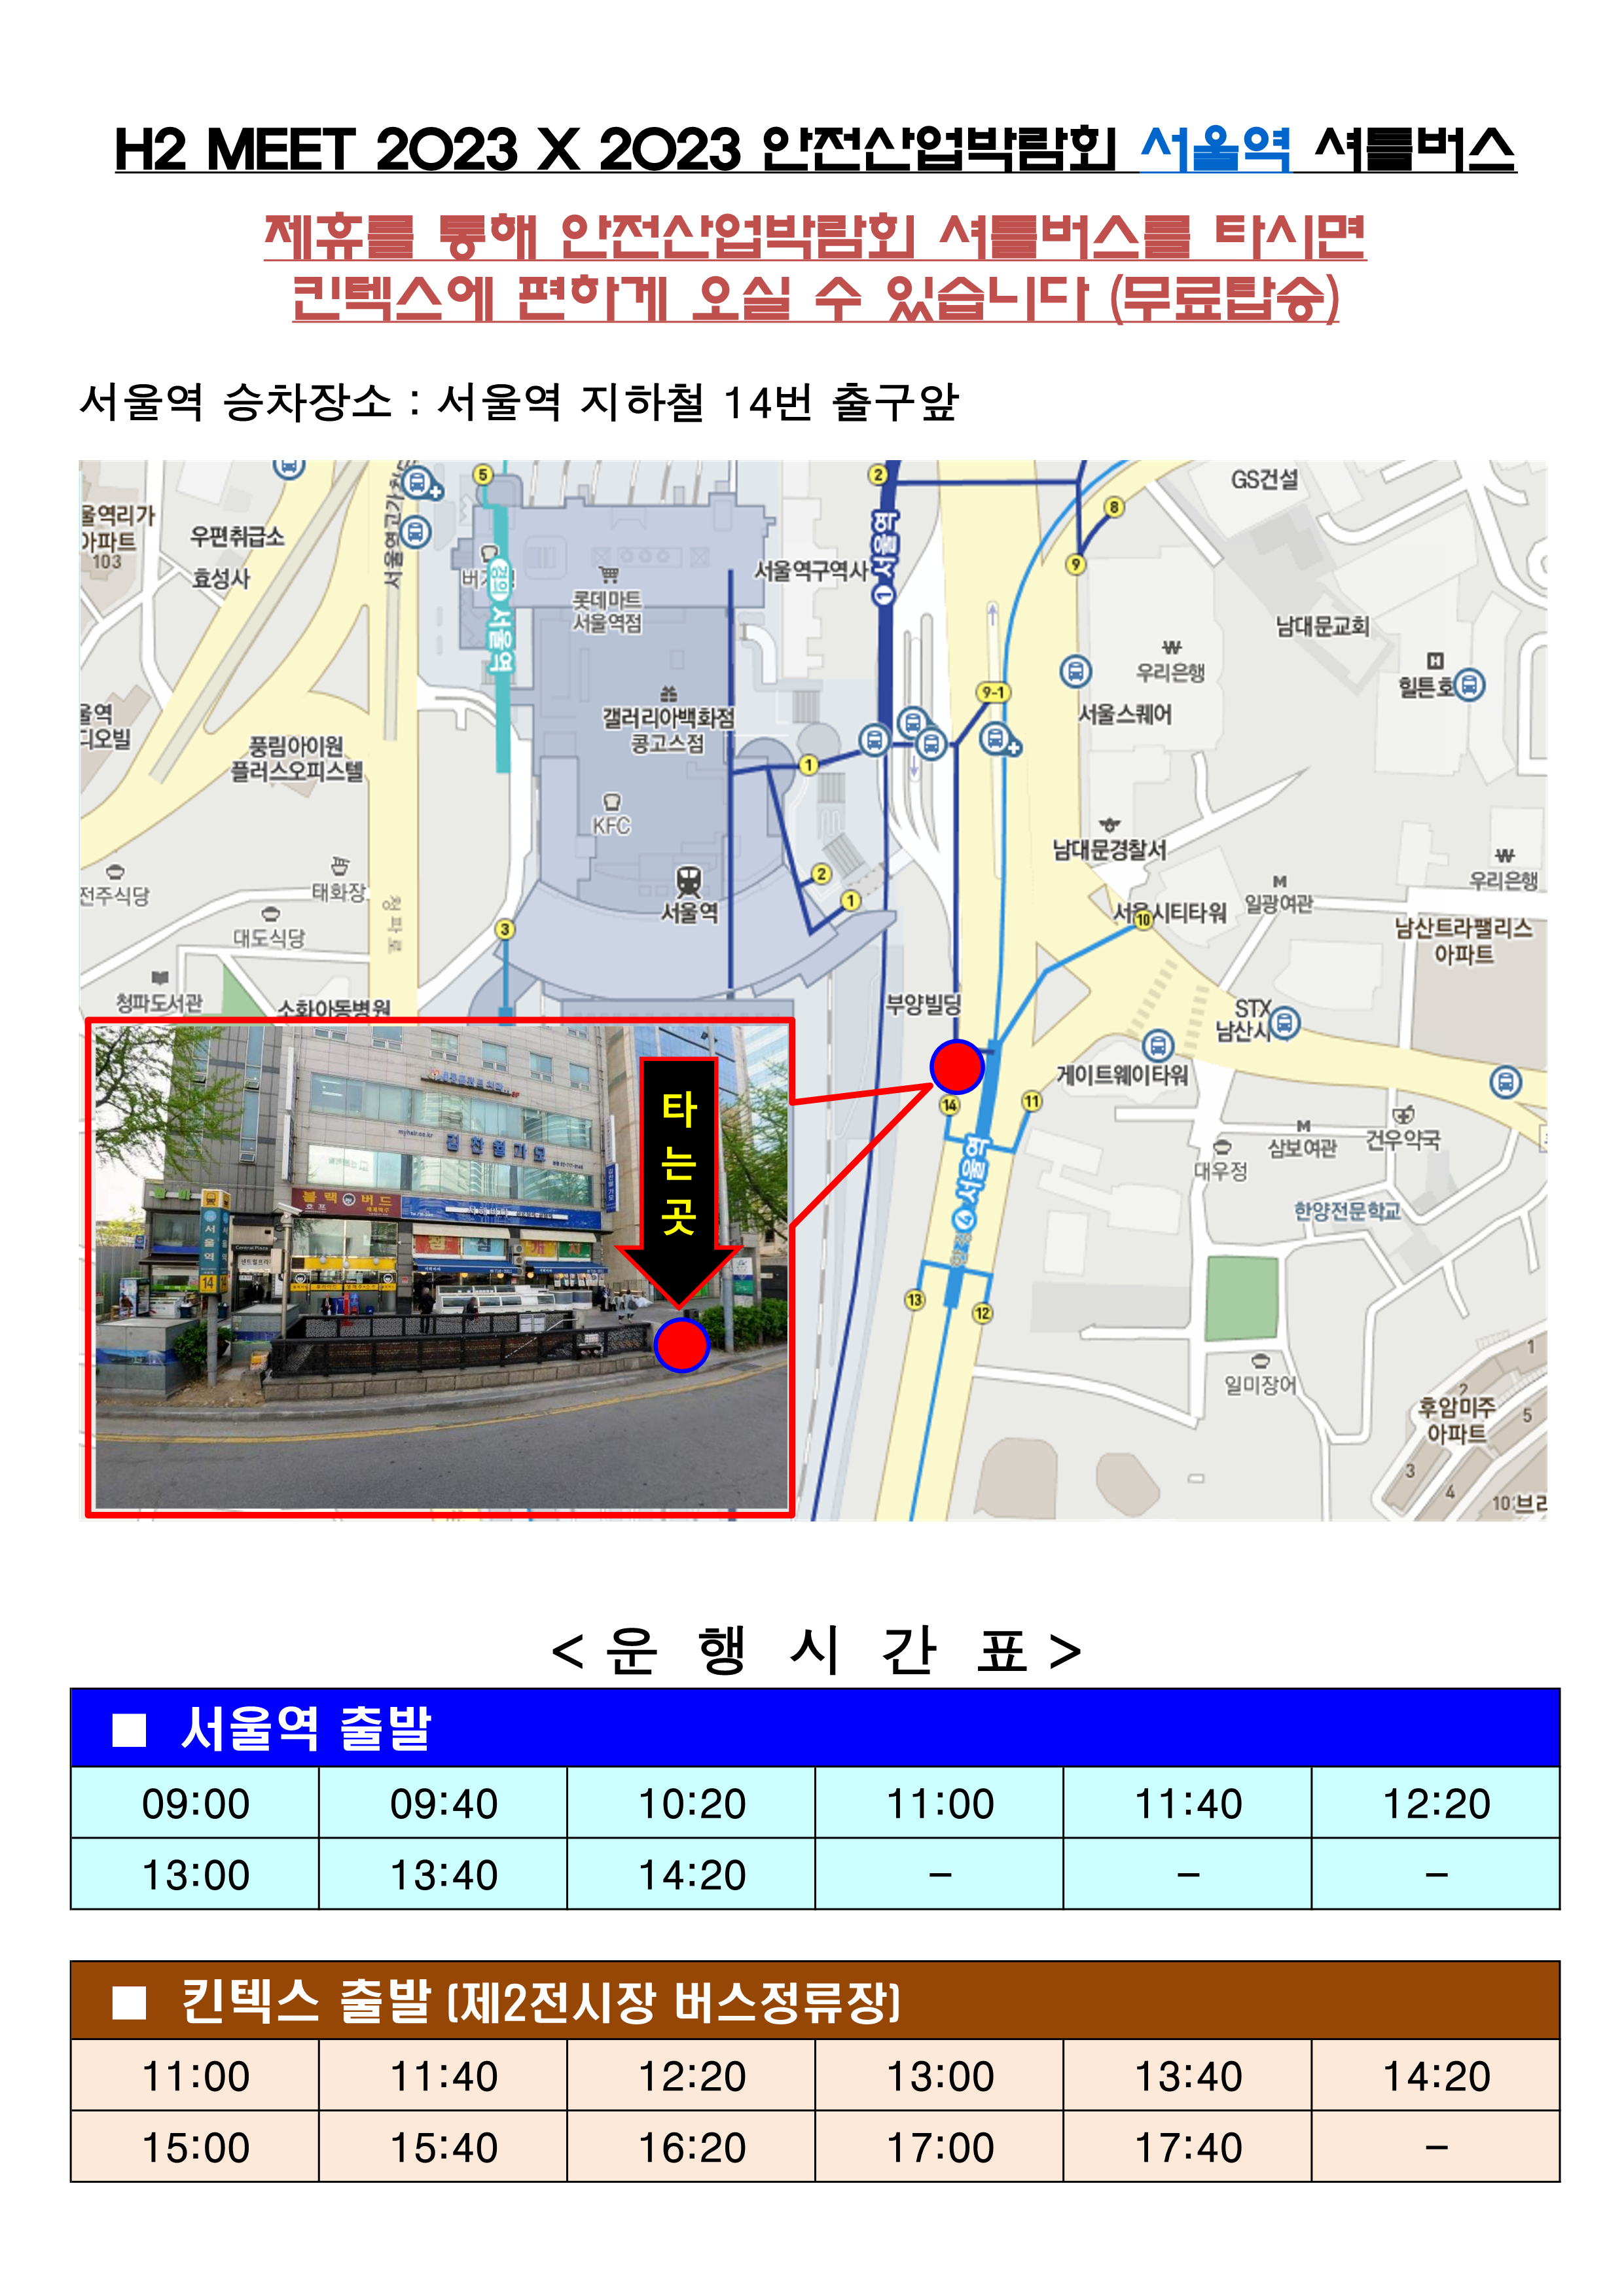 서울역,용산역-킨텍스 셔틀 승차장소 및 시간표(H2 MEET_안전산업박람회 제휴)_1.png